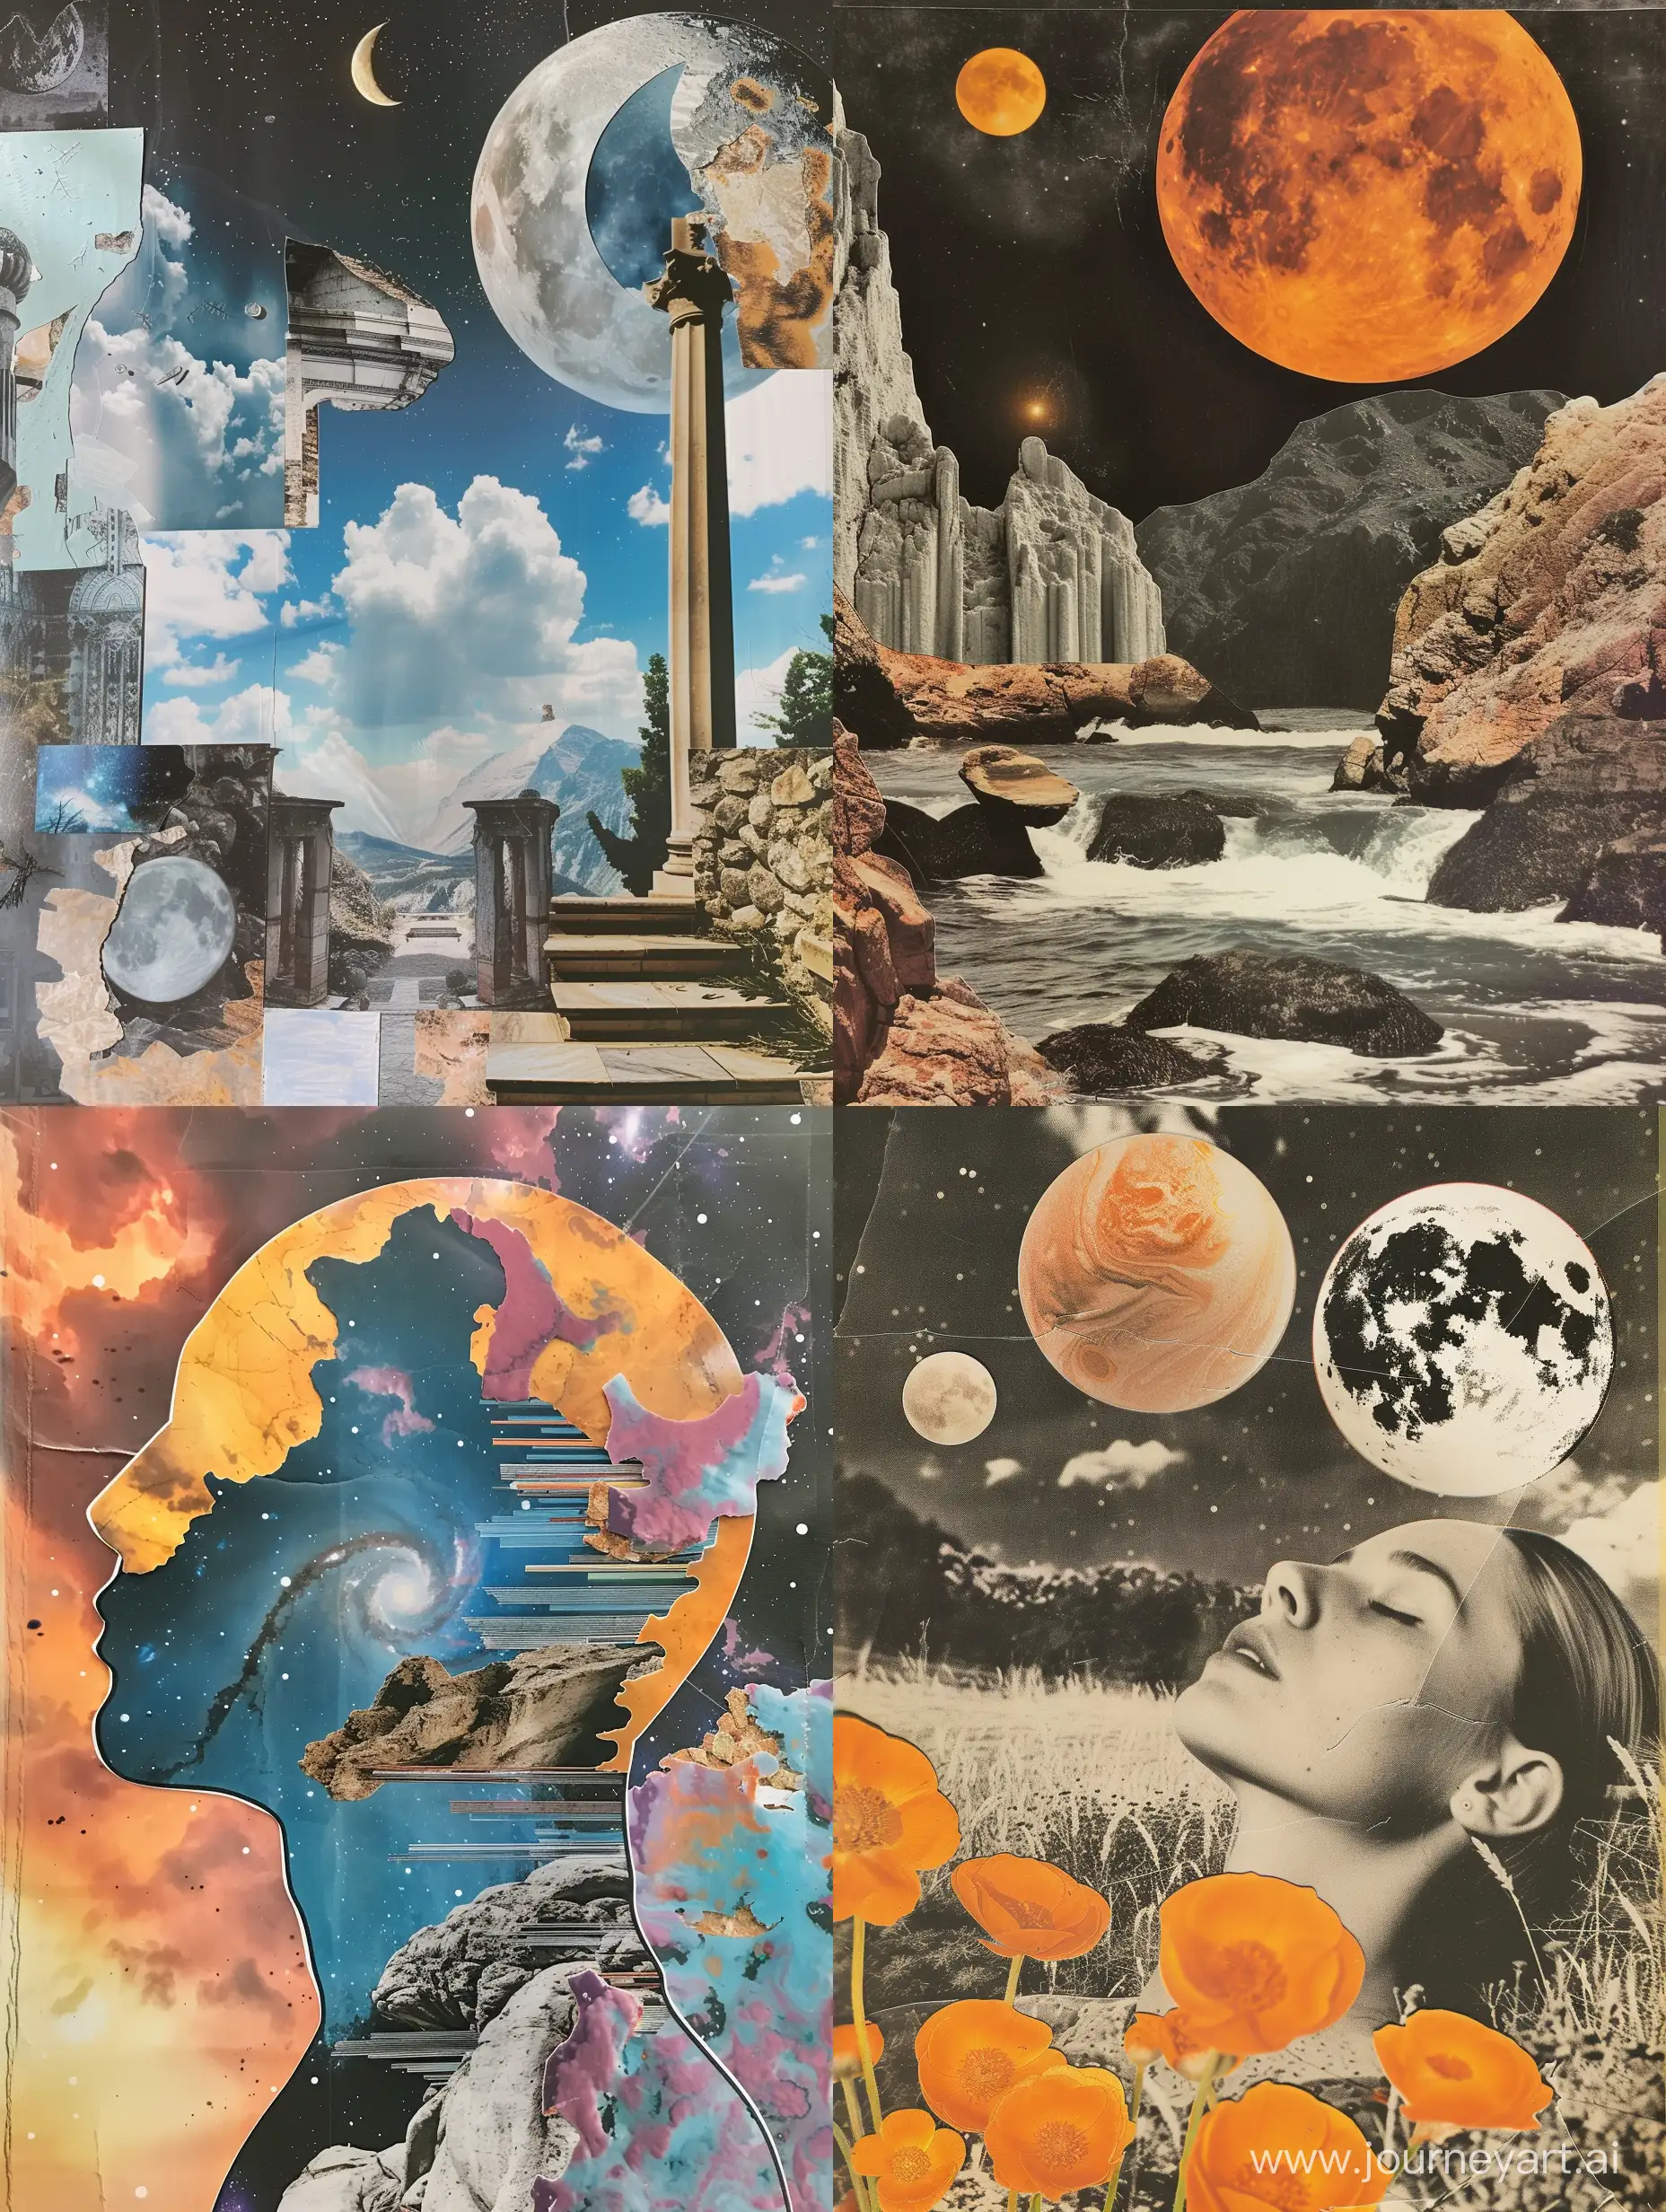 A dream collage